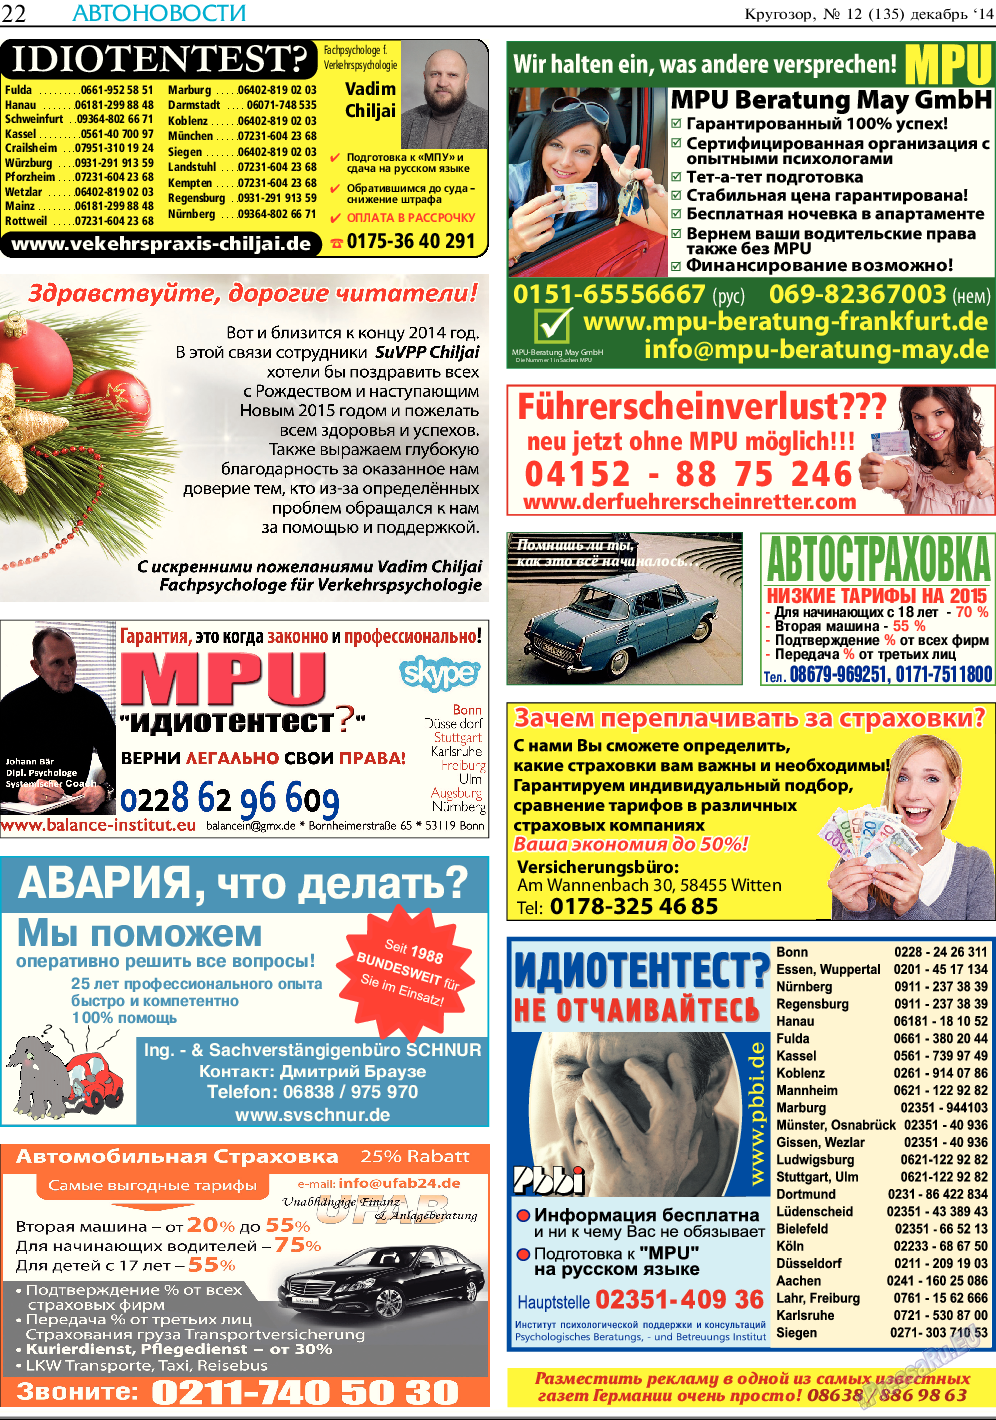 Кругозор, газета. 2014 №12 стр.22